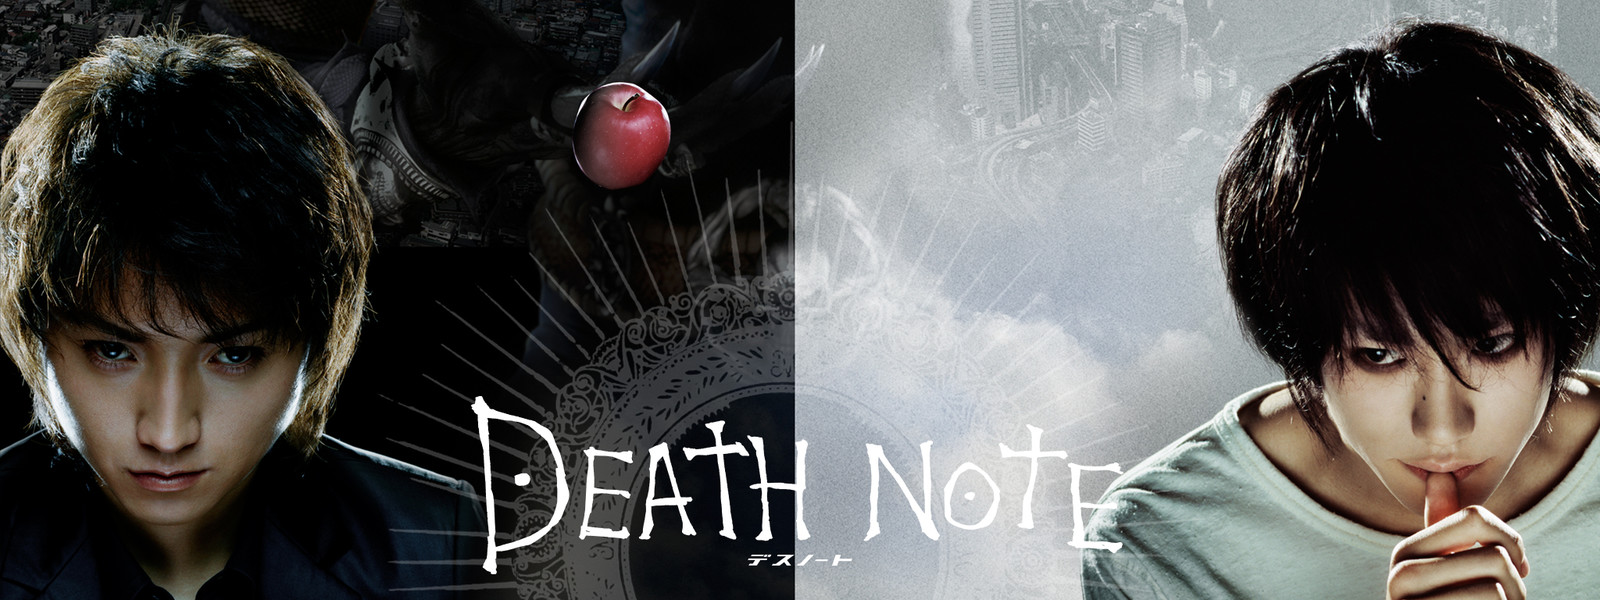 Death Note デスノート Movie の動画は無料で見れる 最安値の配信先とは Vodzoo